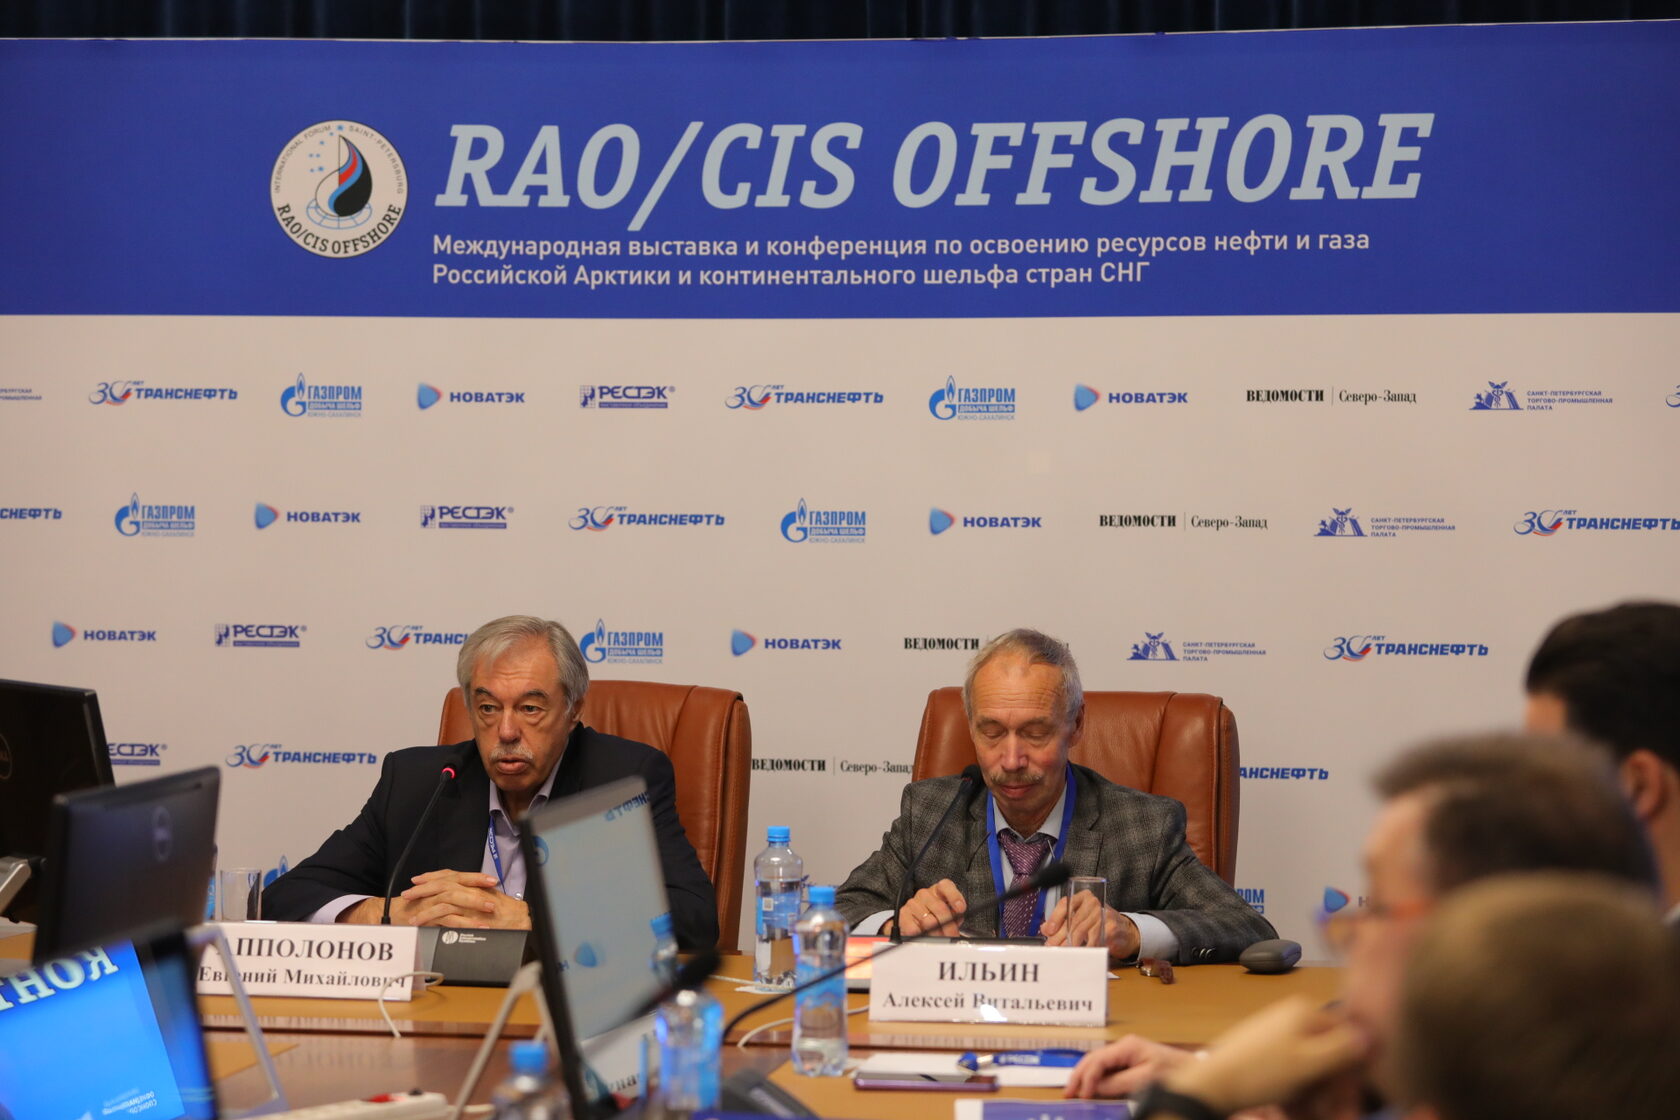 В рамках конференции RAO/CIS Offshore состоялся круглый стол «Флот для освоения континентального шельфа».